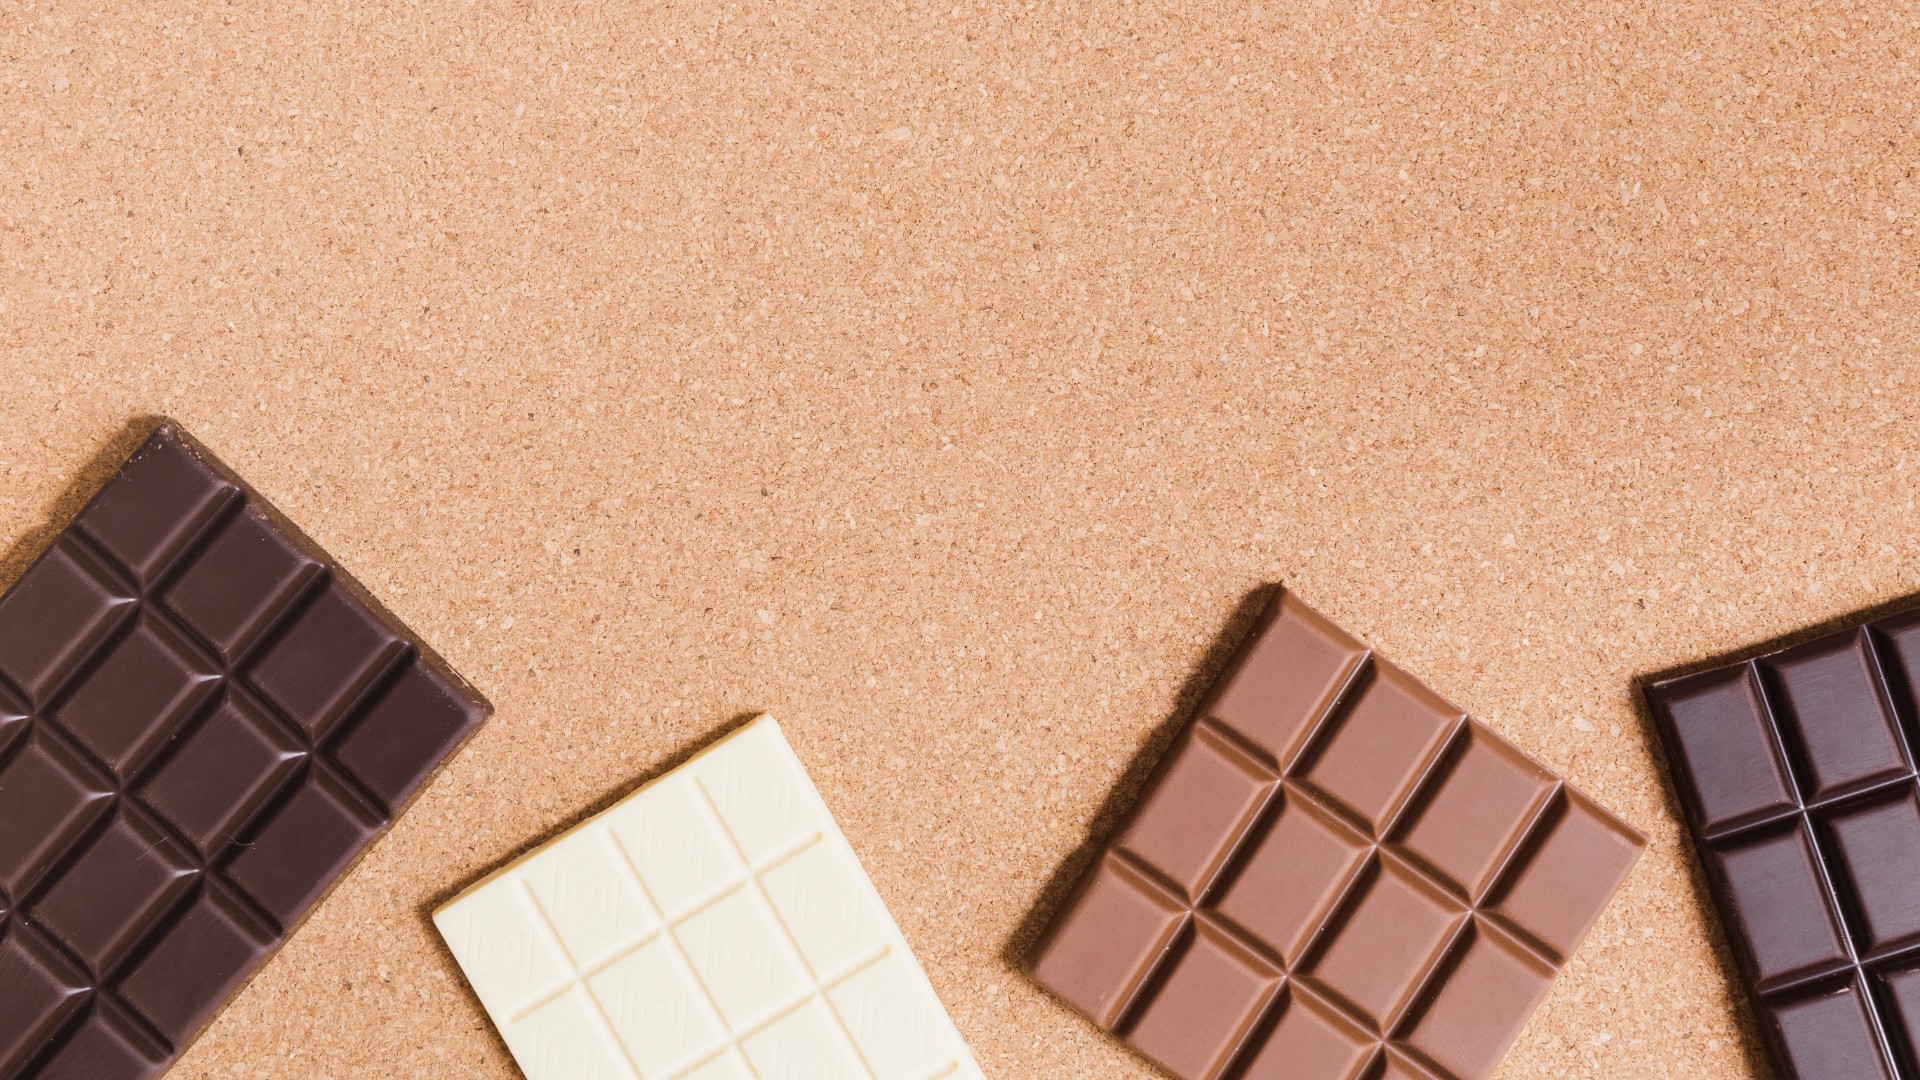 Foto de capa do artigo "Chocolate: quais os benefícios e a quantidade diária ideal?"